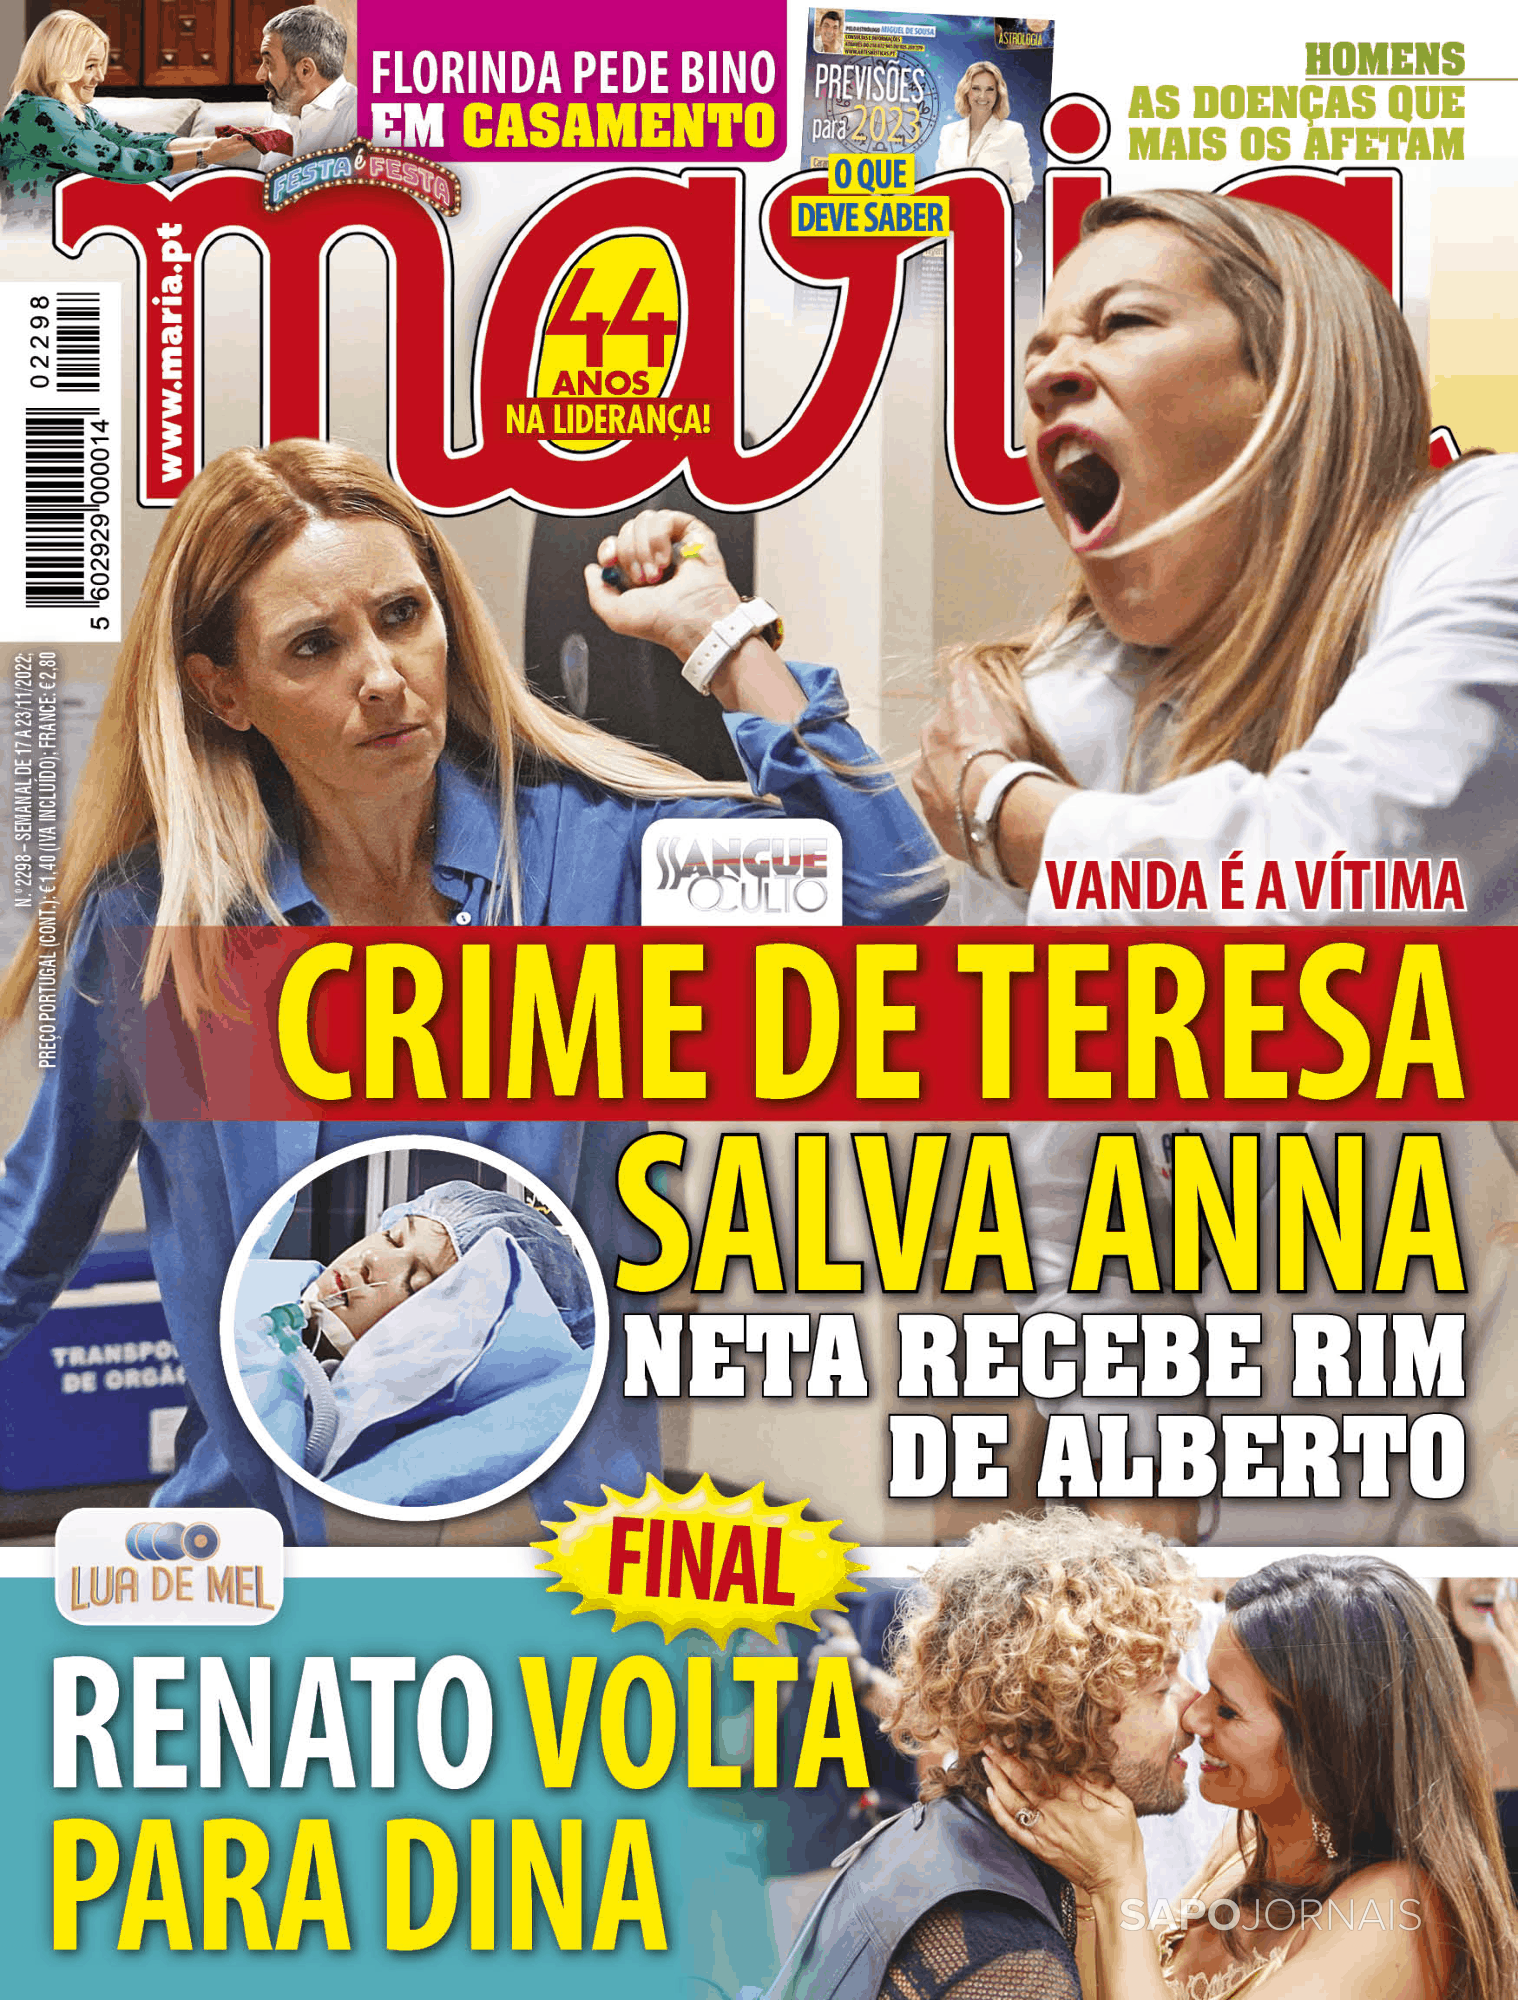 Maria 17 Nov 2022 Jornais E Revistas Sapo